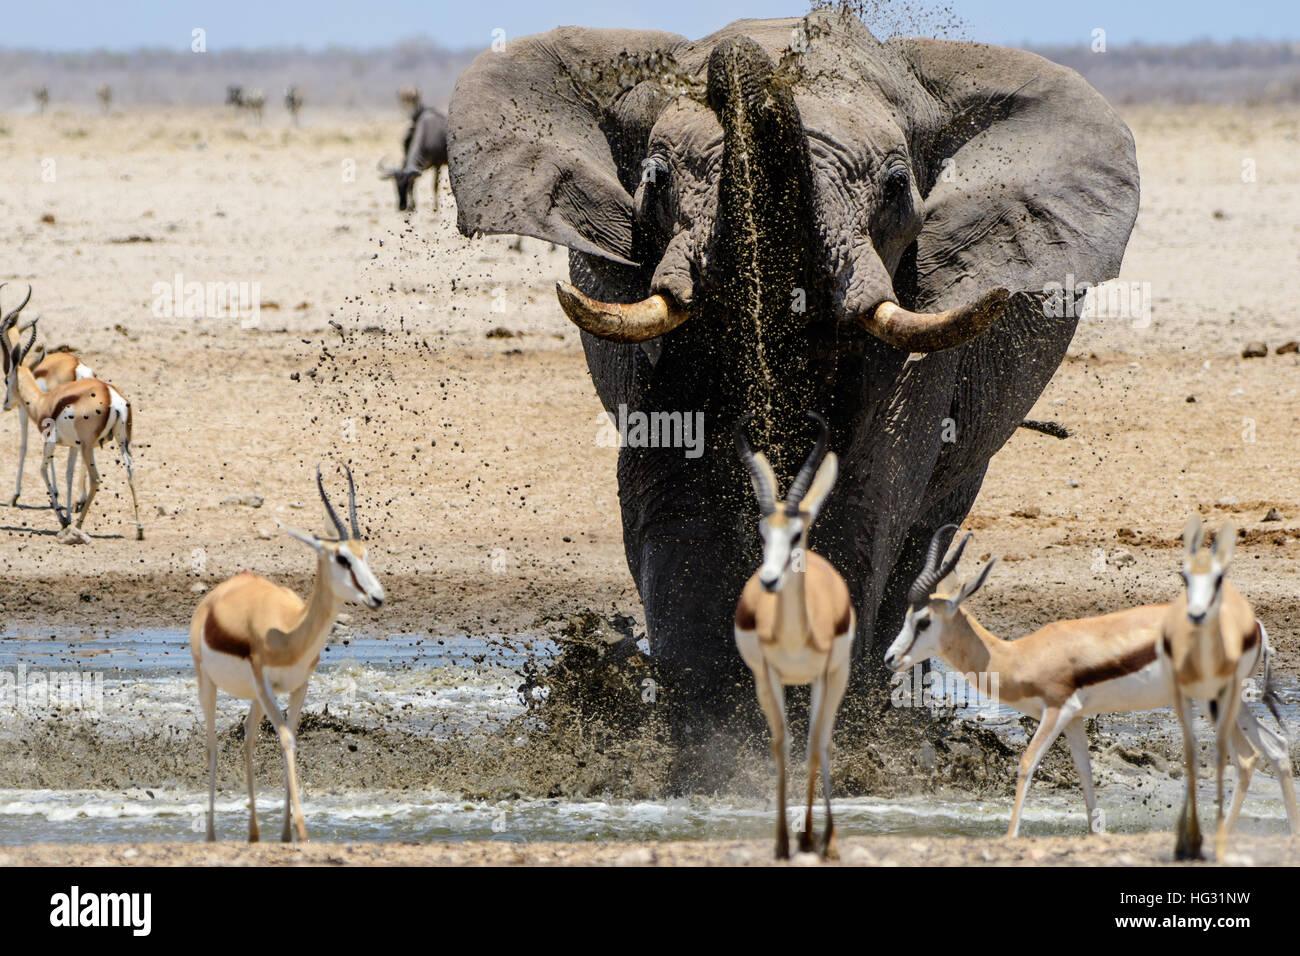 Bull elephant drinking at a waterhole Stock Photo